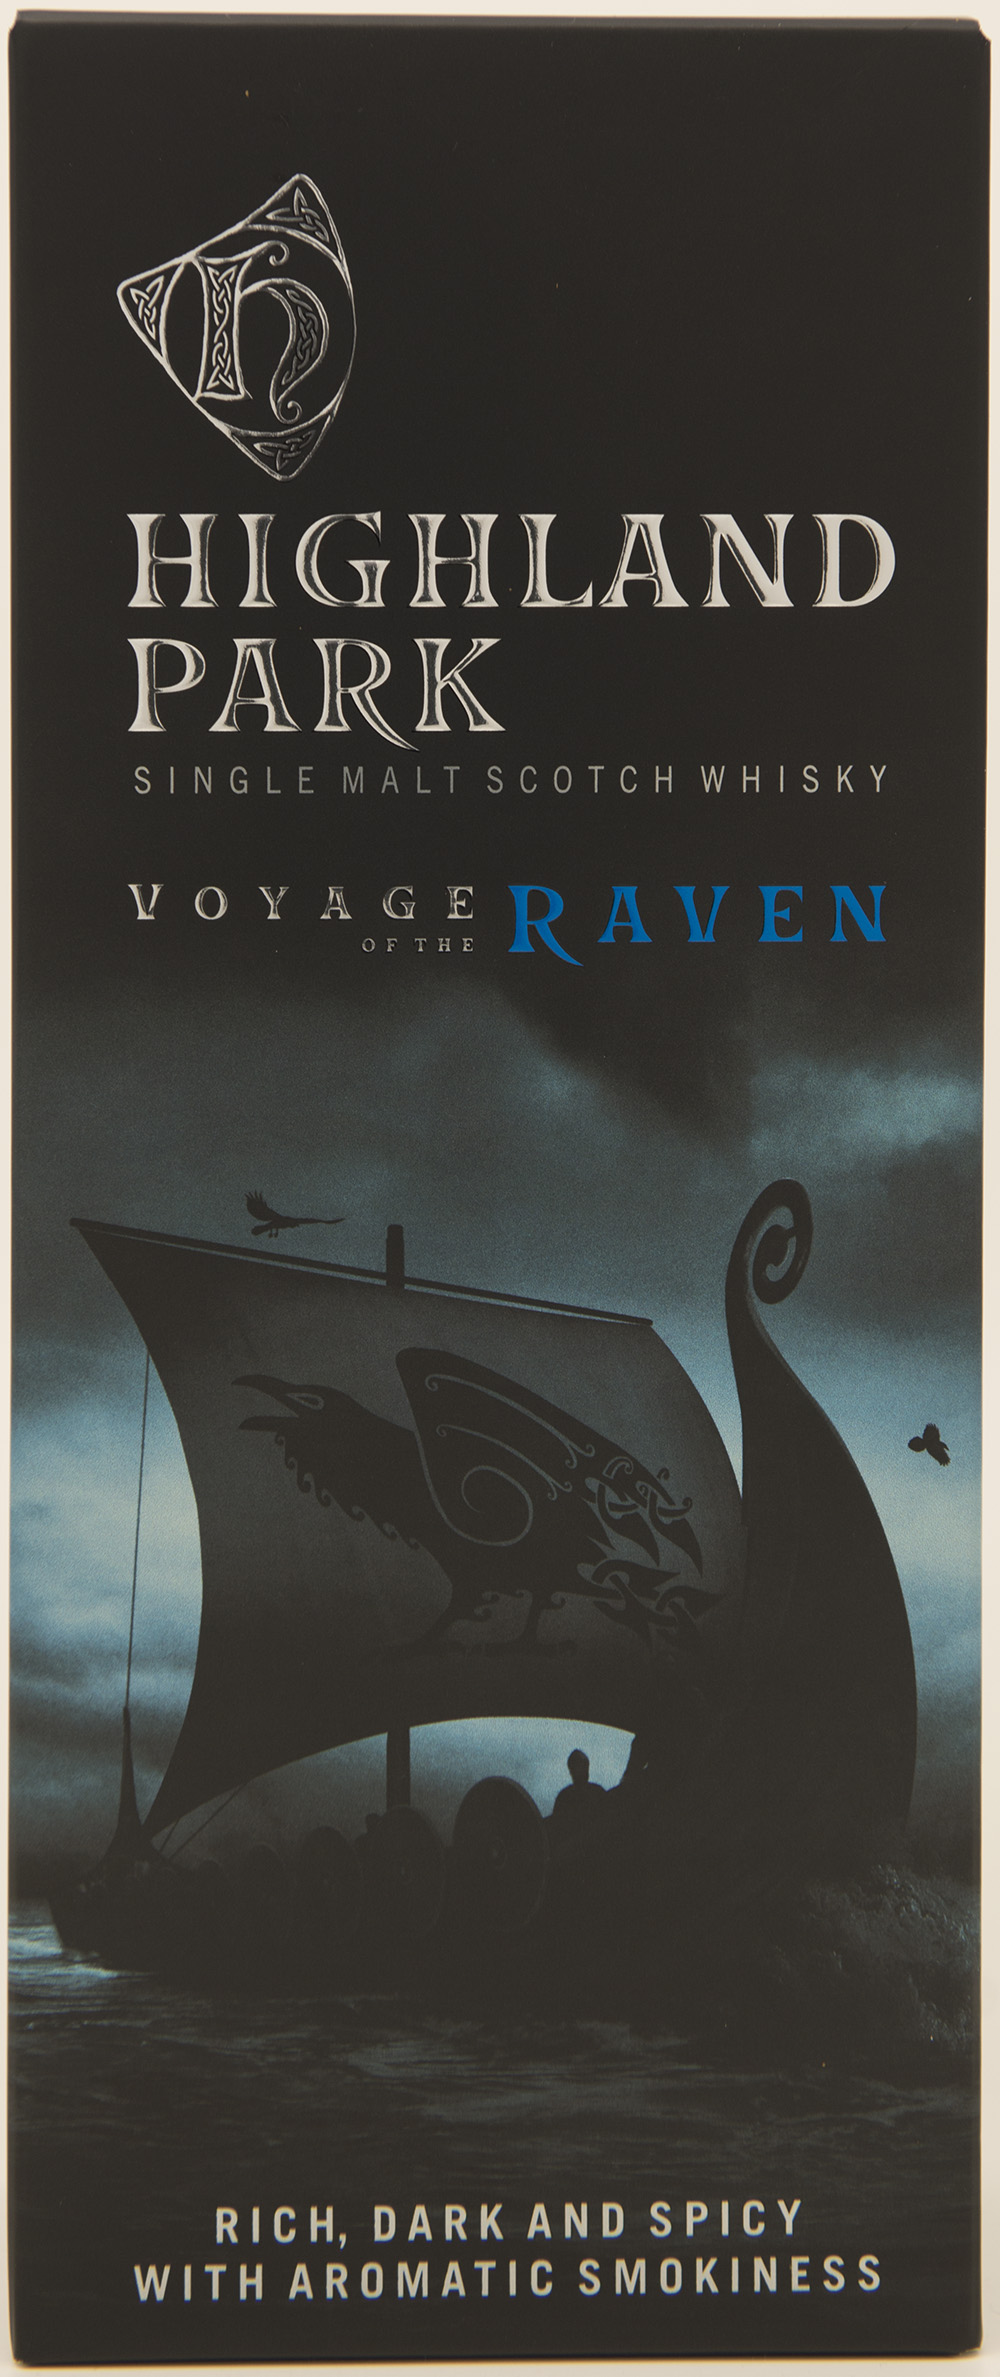 Billede: DSC_3706 - Highland Park - Voyage of the Raven (box front).jpg